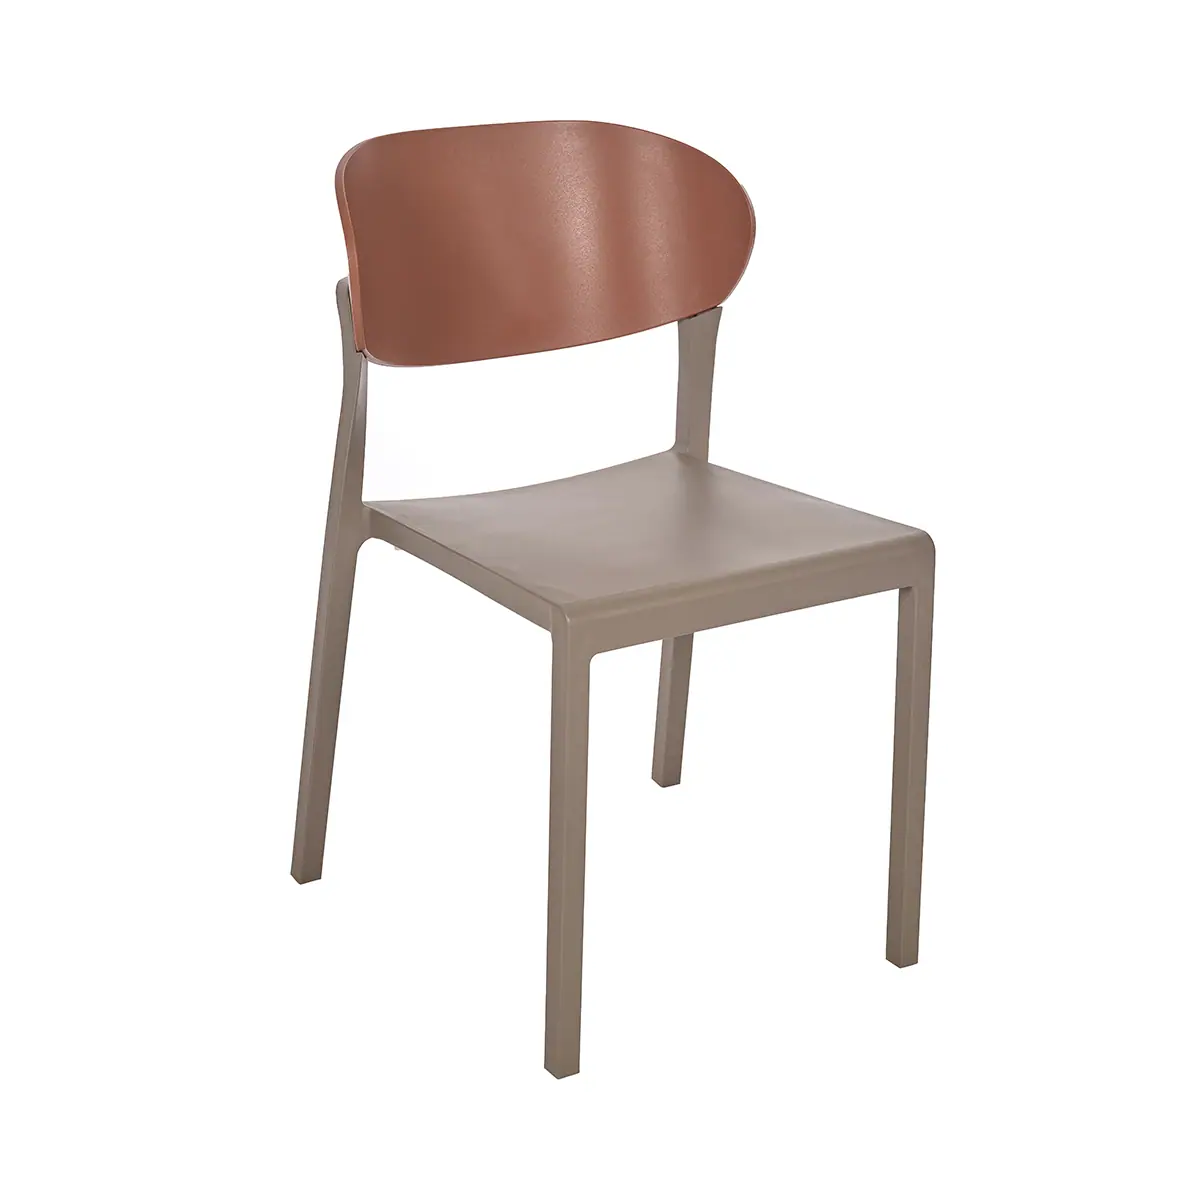 81388-77910-bake-chair